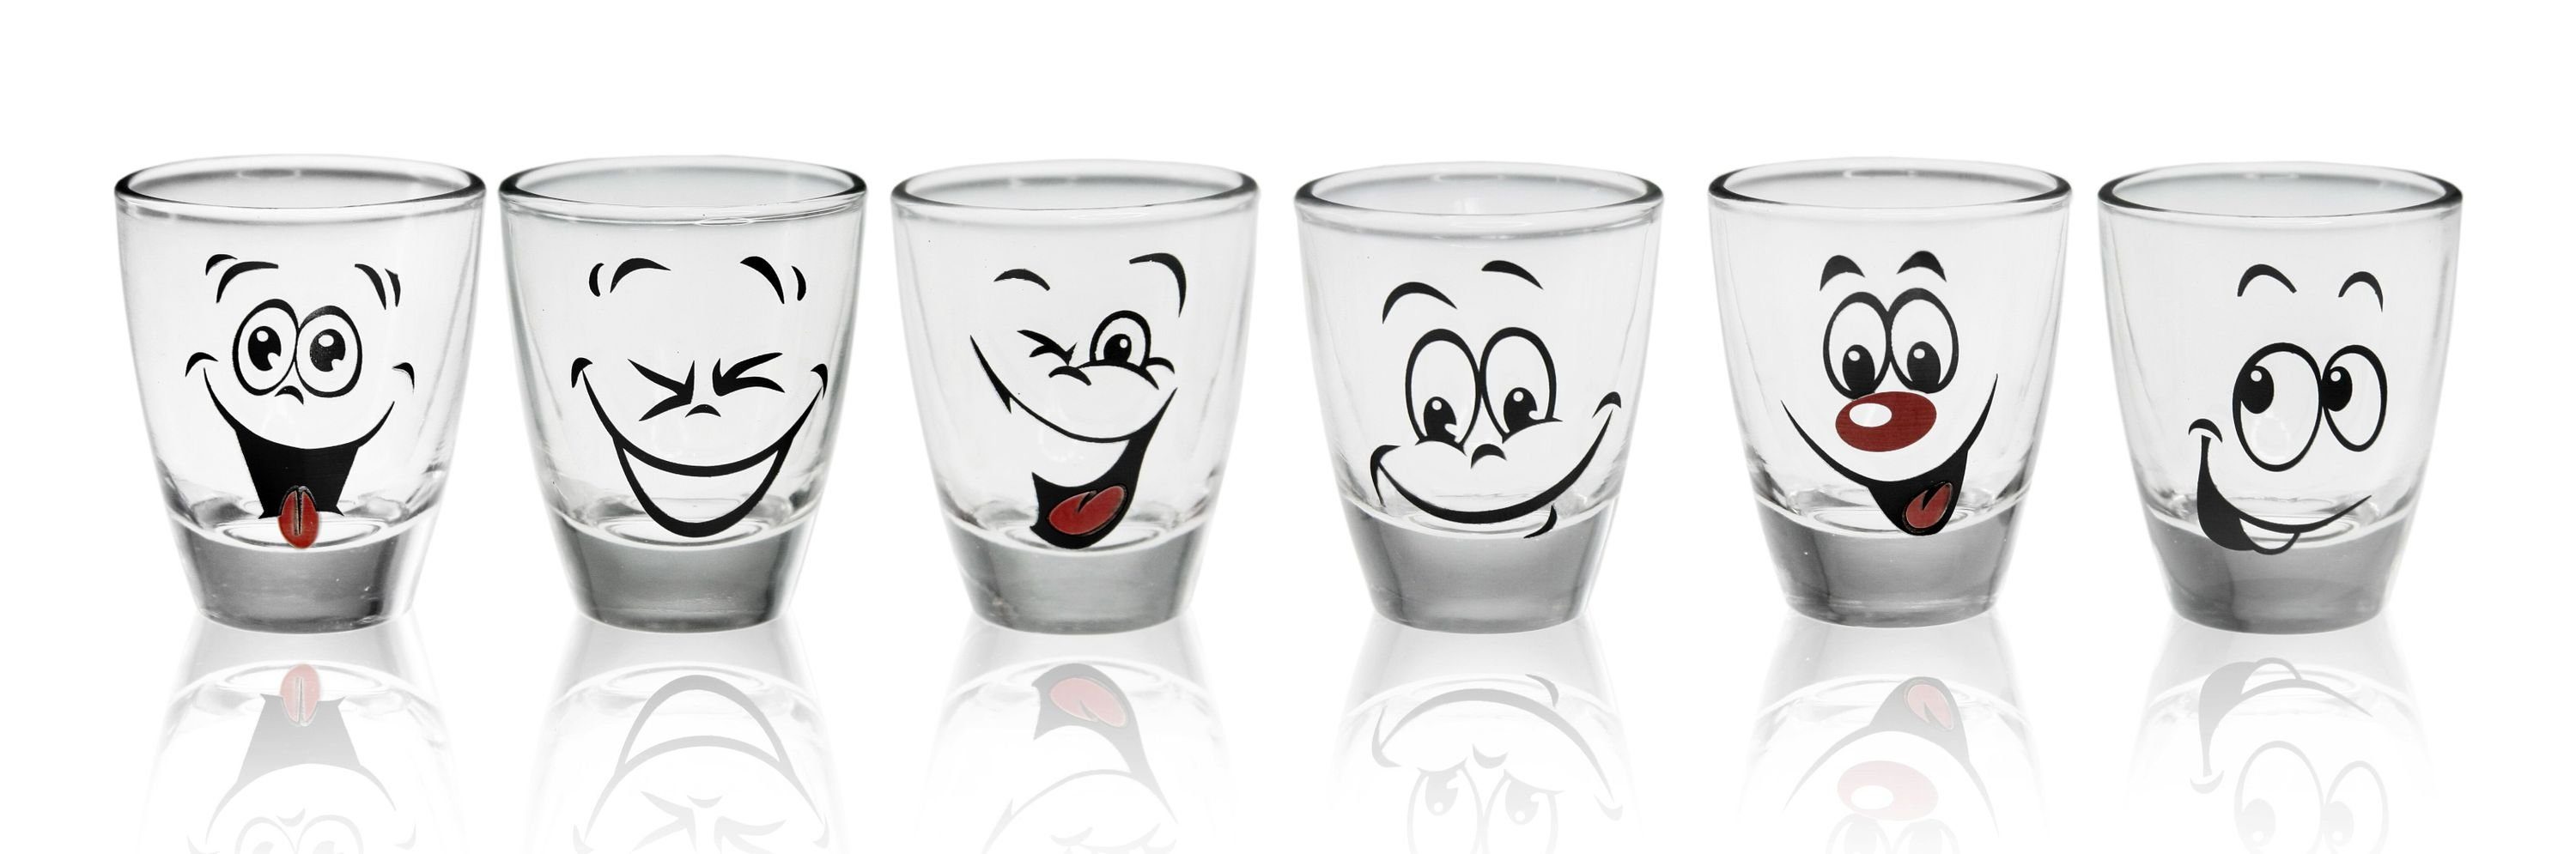 PLATINUX Schnapsglas Shotgläser mit lustigen Gesichtern, Glas, Set 6 Teilig 2,5cl Tequila Karnevalsgläser Schnapsgläser Pinnchen